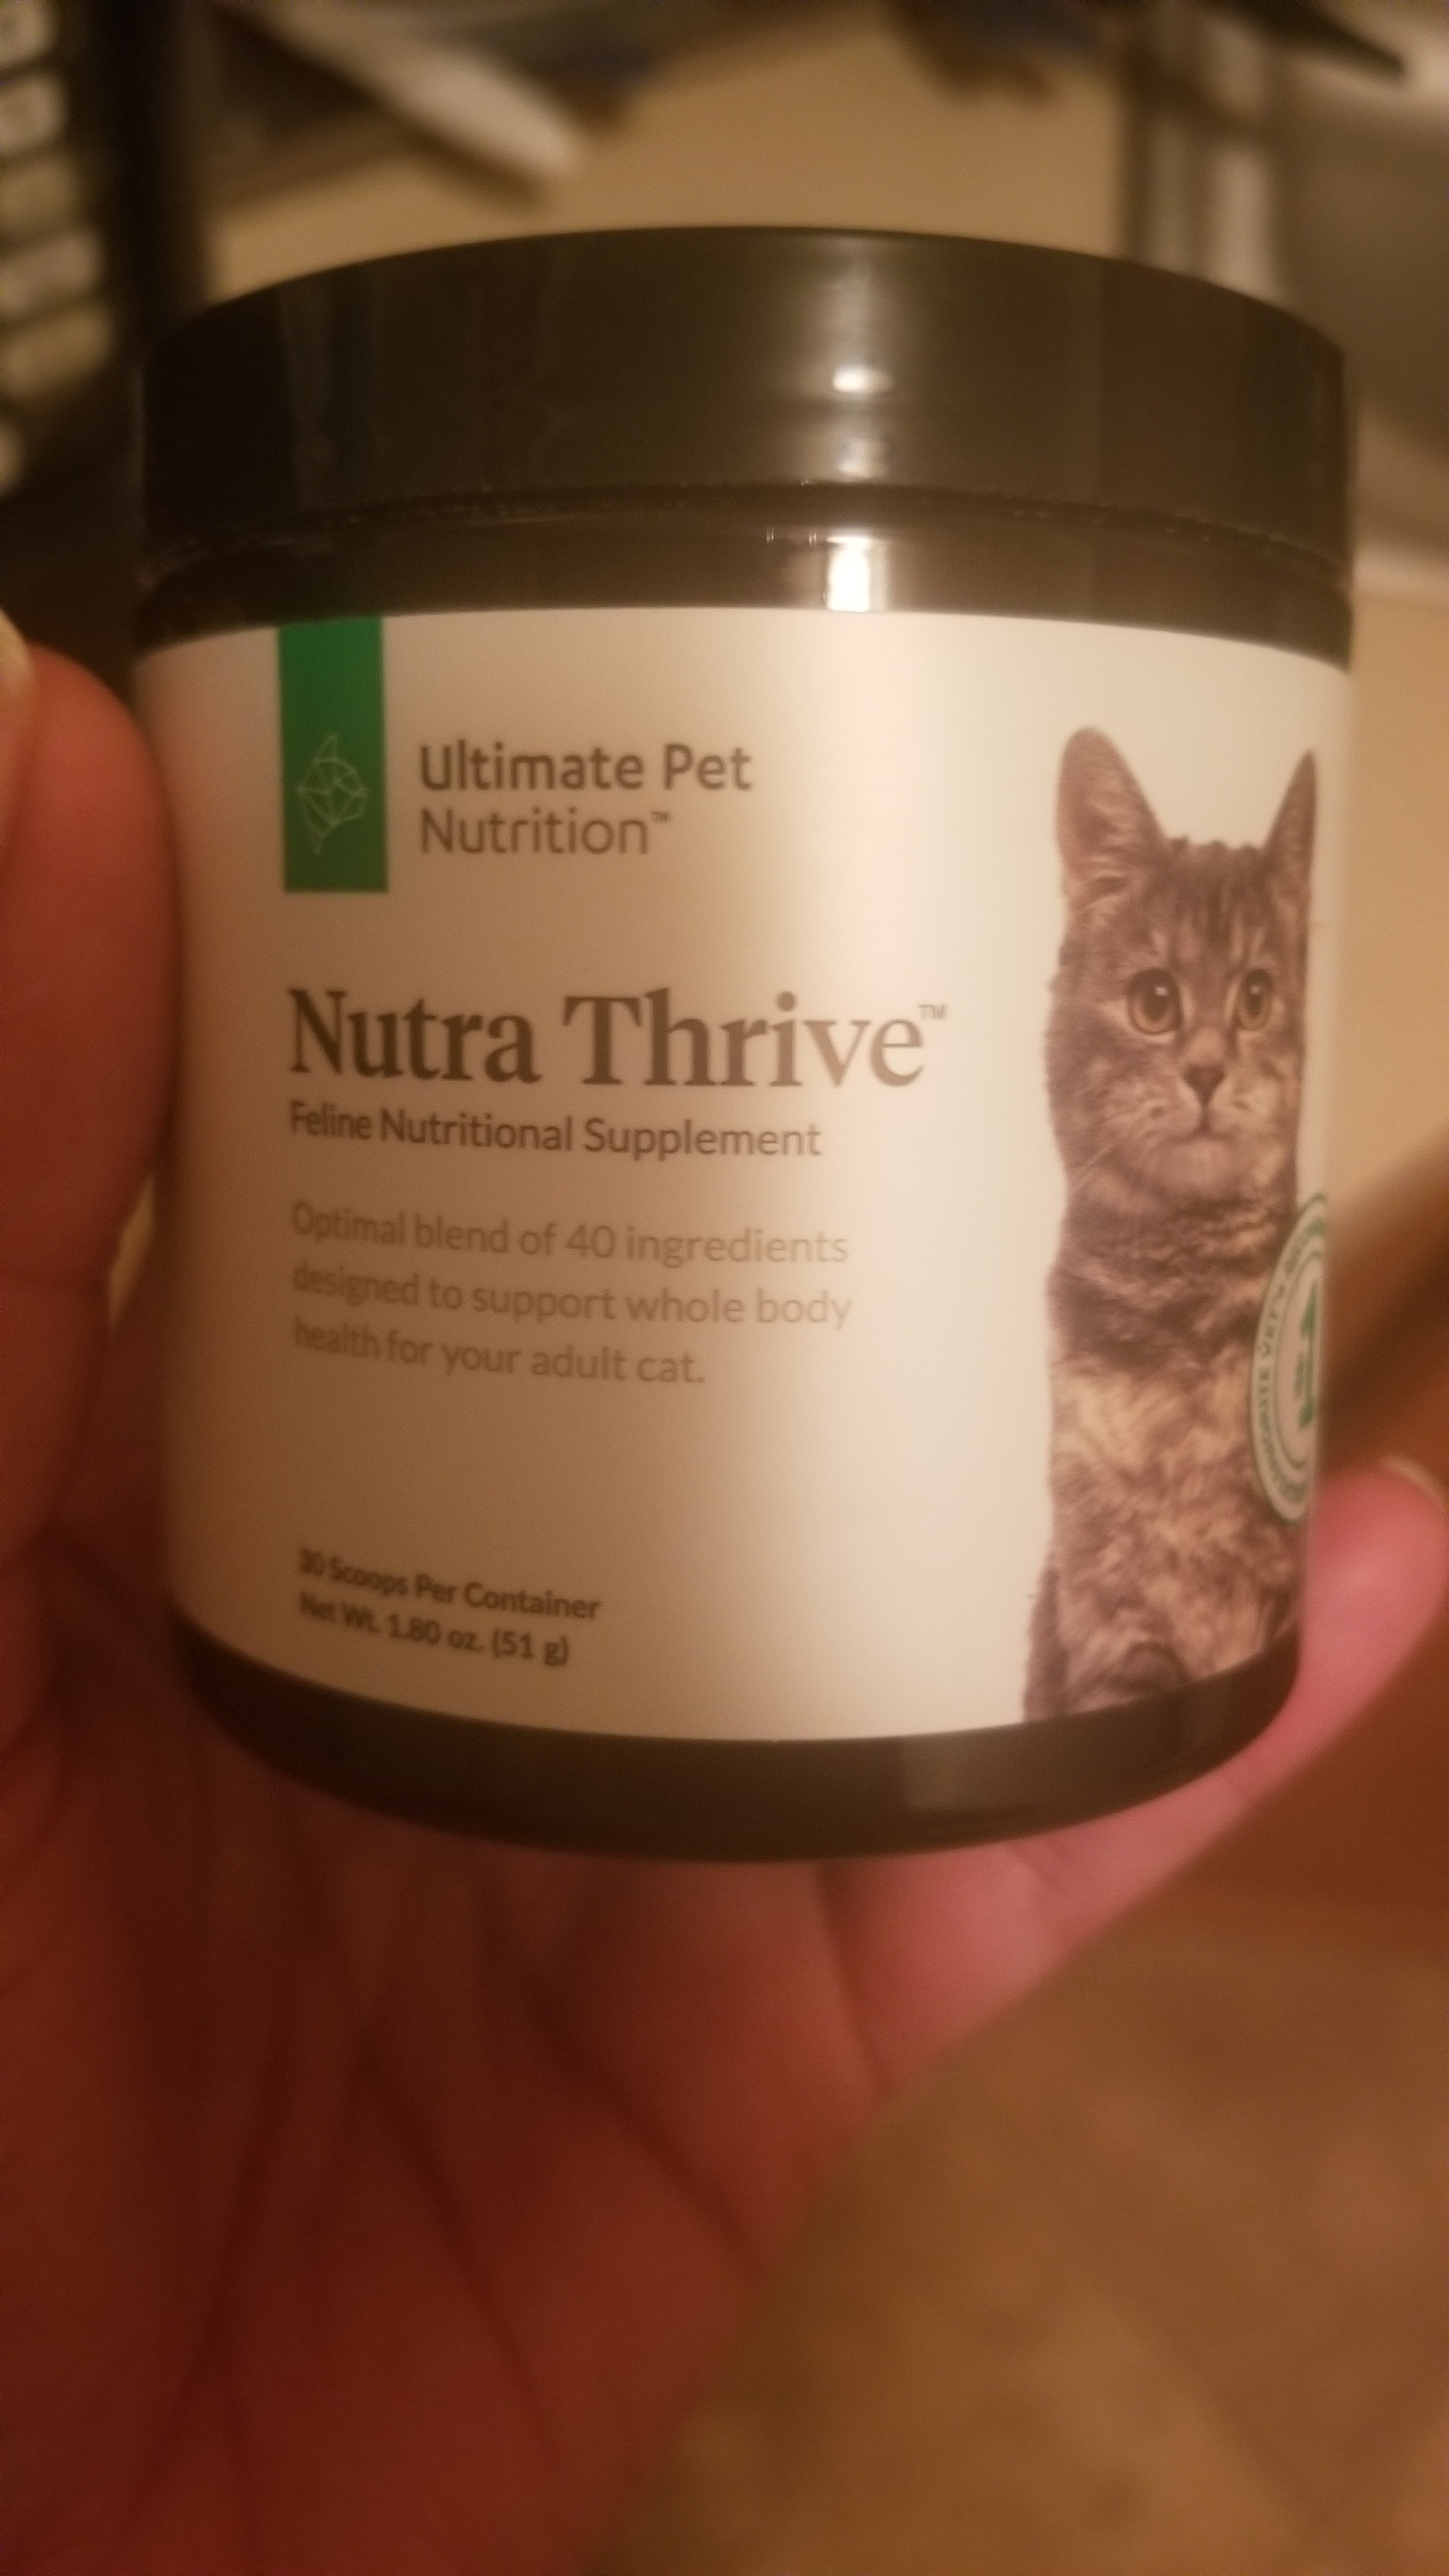 ultimate pet nutrition ingredients